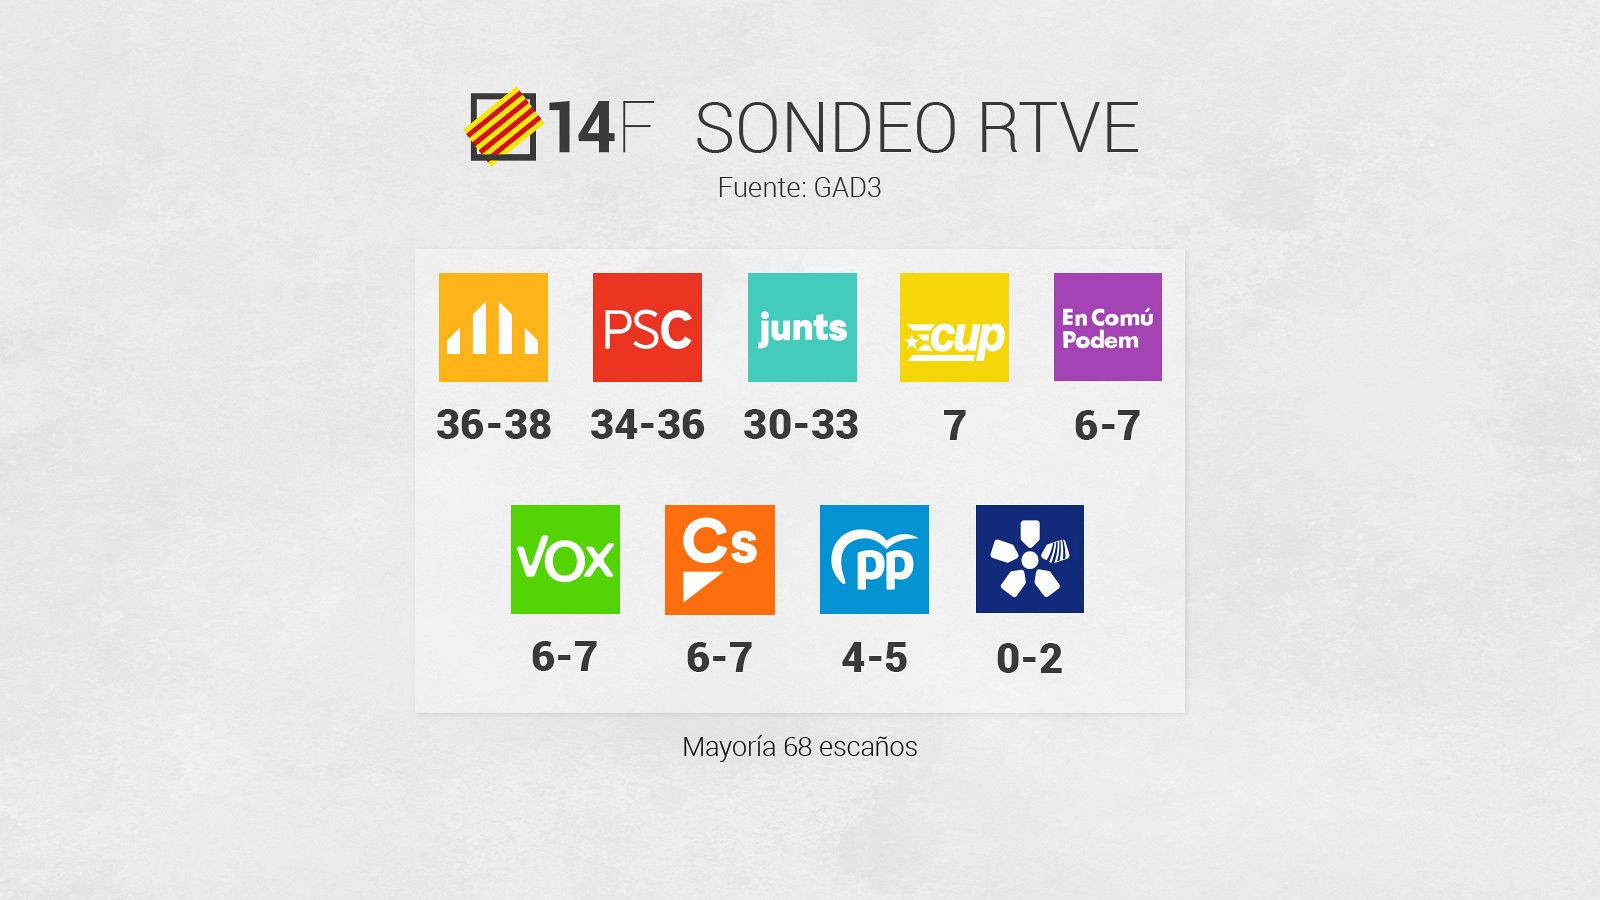 Sondeo de RTVE de las elecciones catalanas del 14 F. Fuente: GAD3.